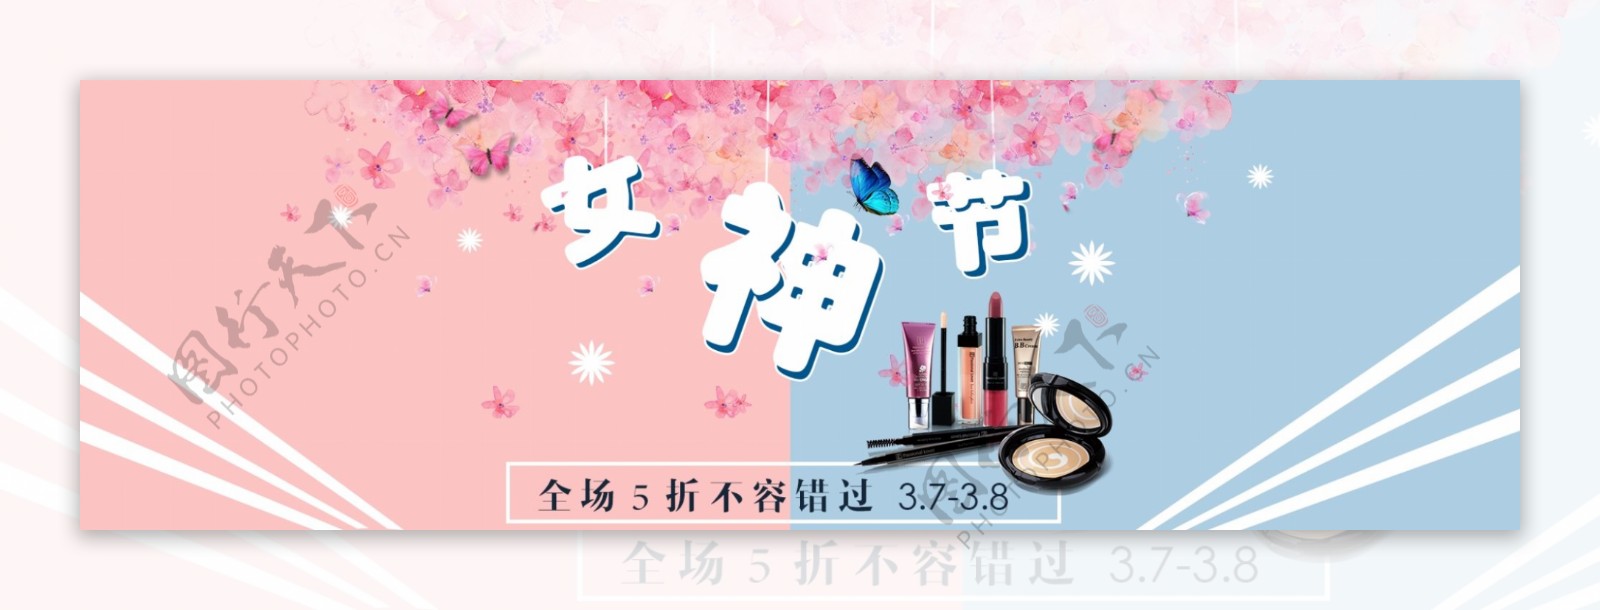 妇女节化妆品淘宝天猫海报女王节首页海报